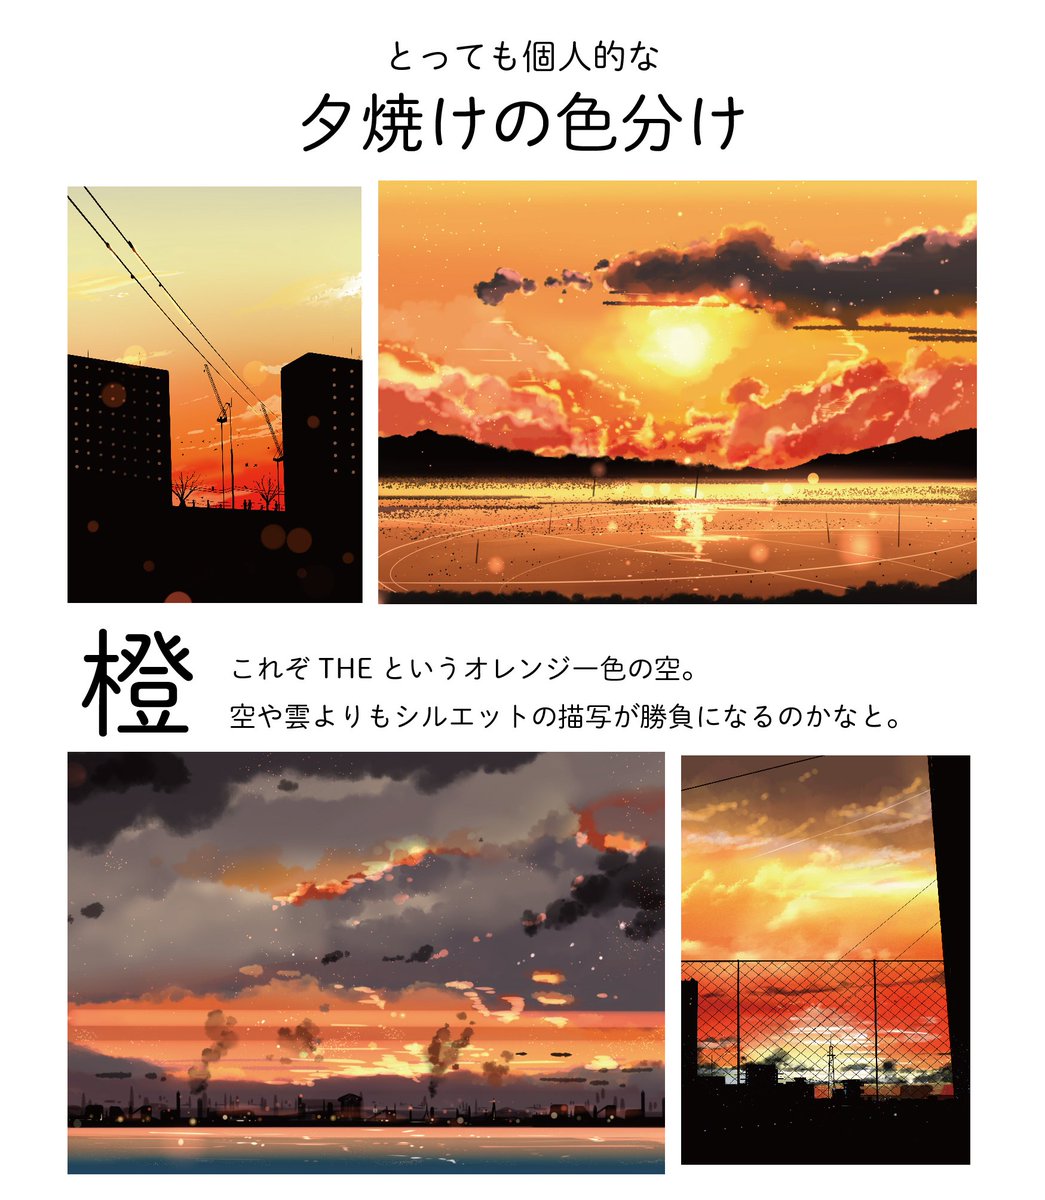 桜田千尋 7月日満月珈琲店画集発売 Auf Twitter 自分の夕焼けのイラストを色ごとに分けてみました 夕焼けイラストは変化する空 のグラデーション作るのが楽しいです 好きな空の色 ありますか 今後のグッズなどの参考にします